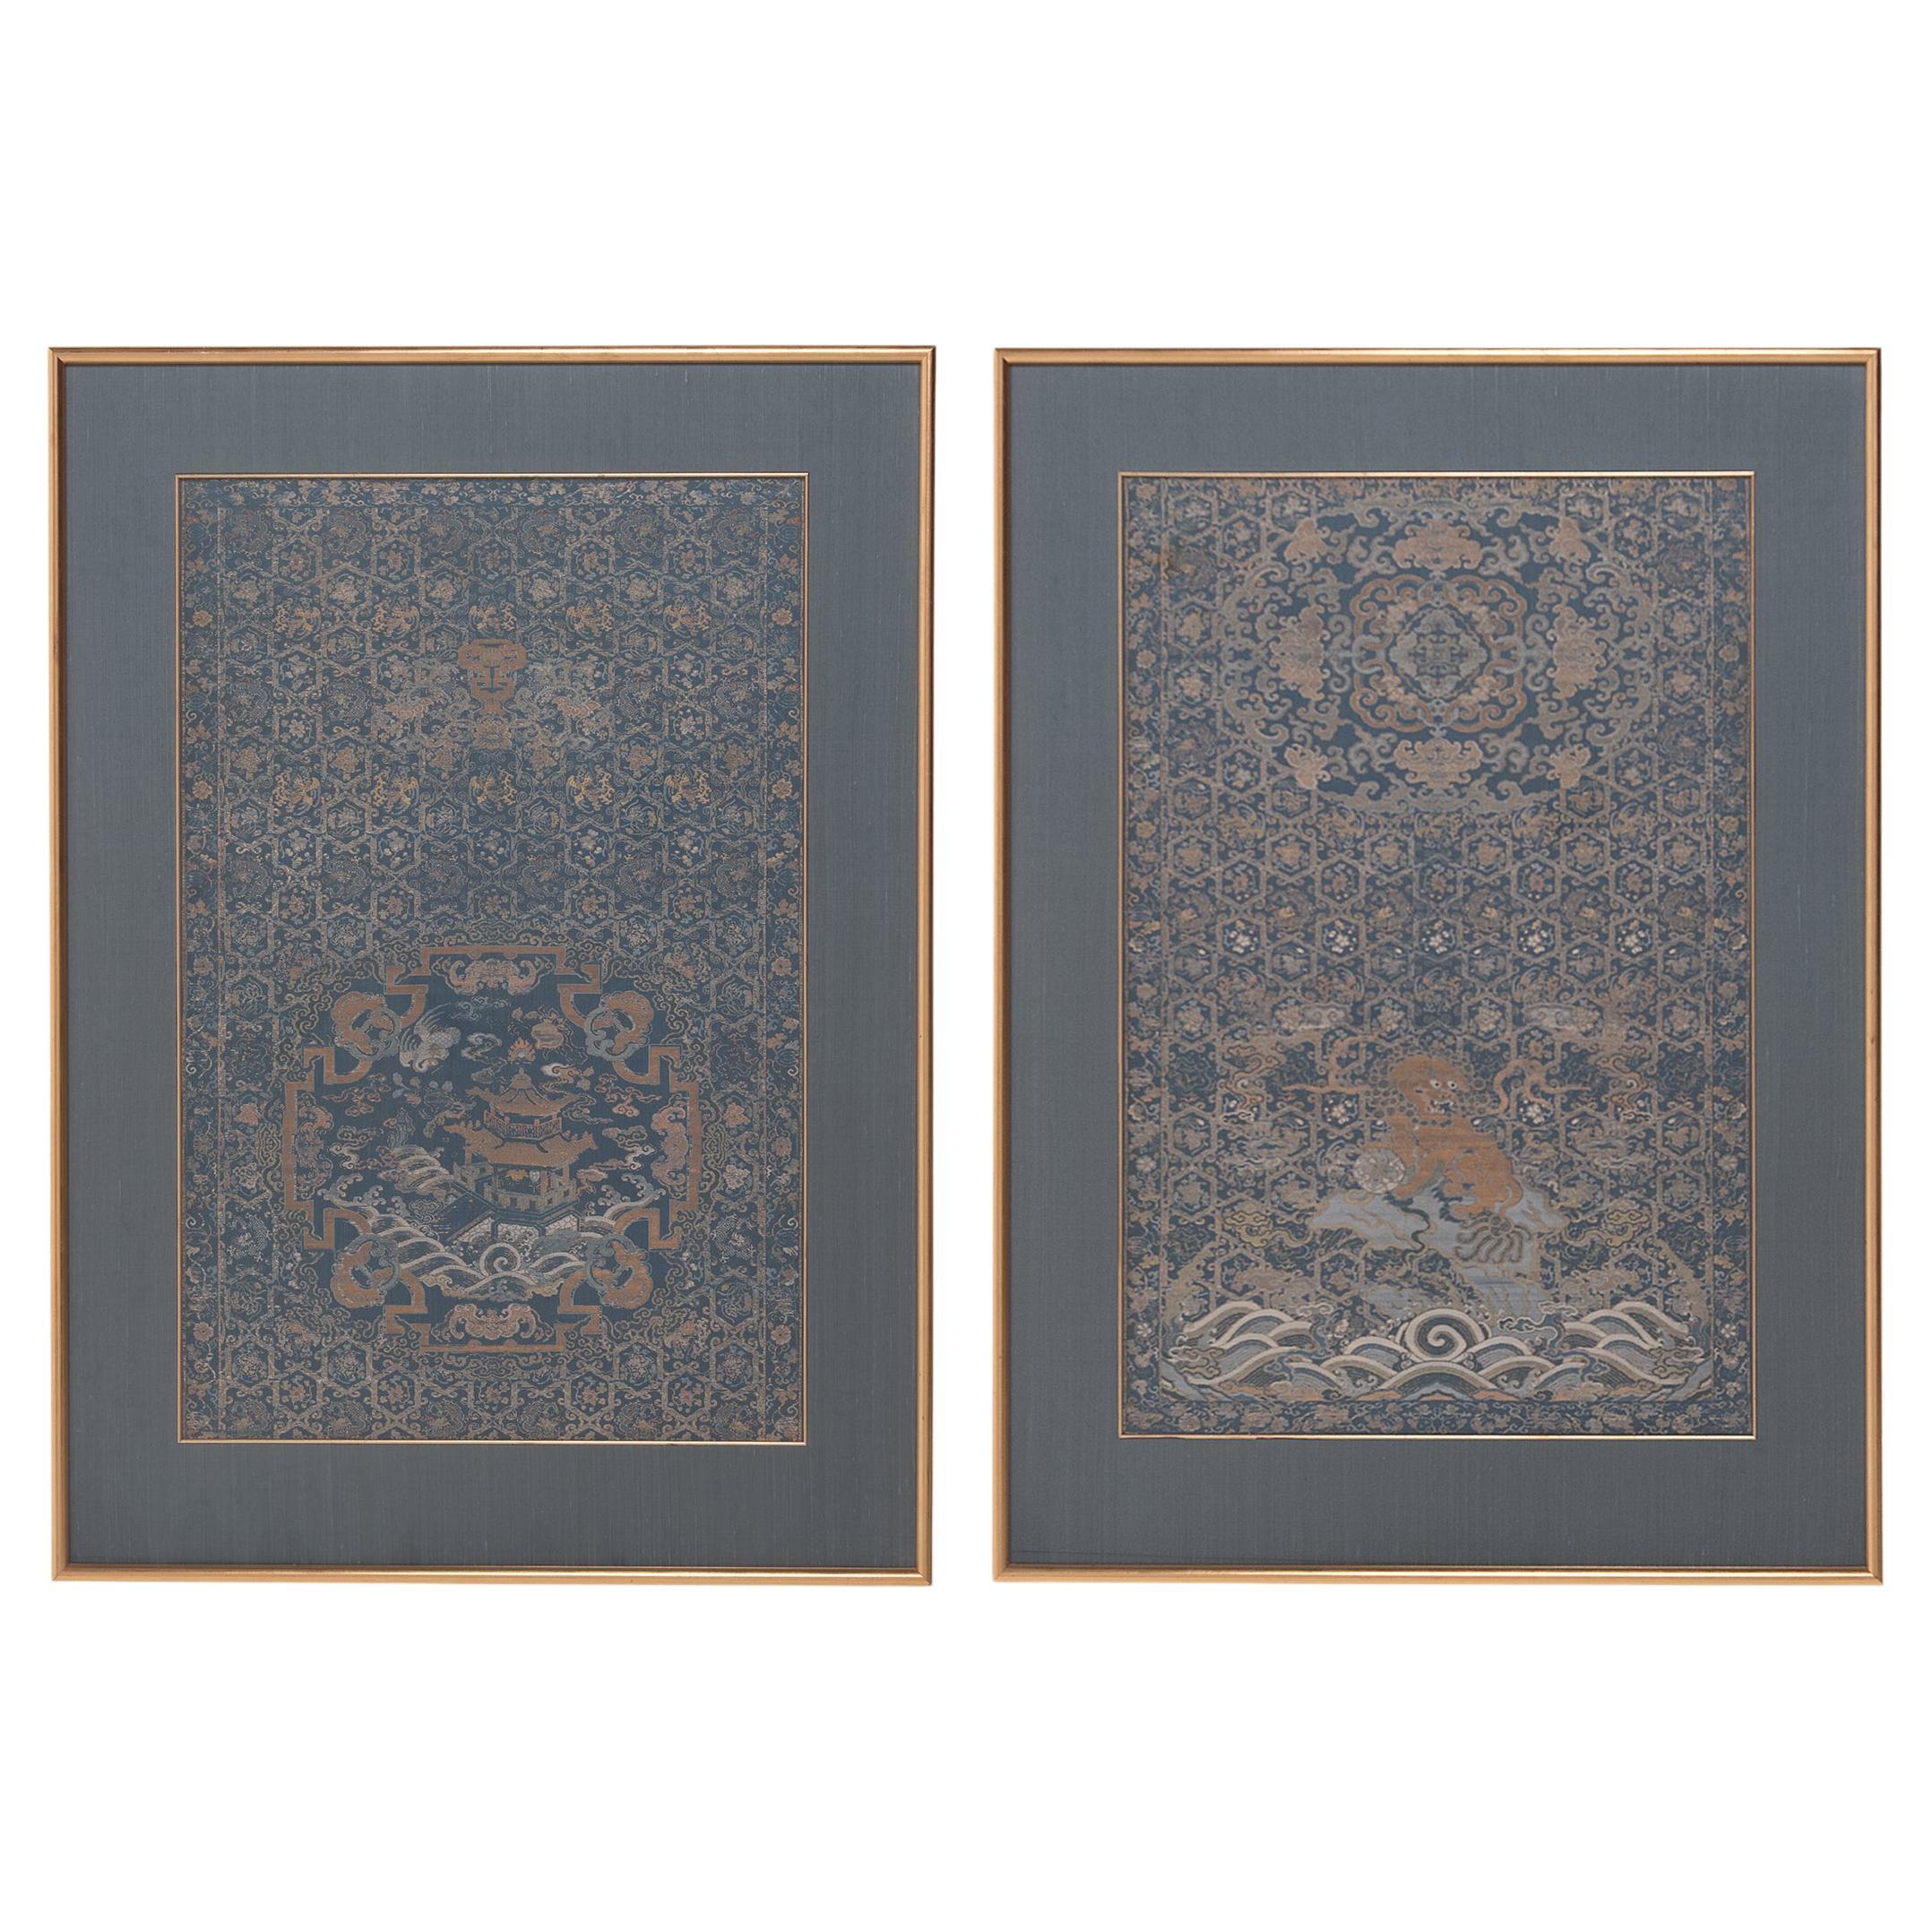 Paire de panneaux de chaise en brocart de soie chinois encadrés, vers 1850